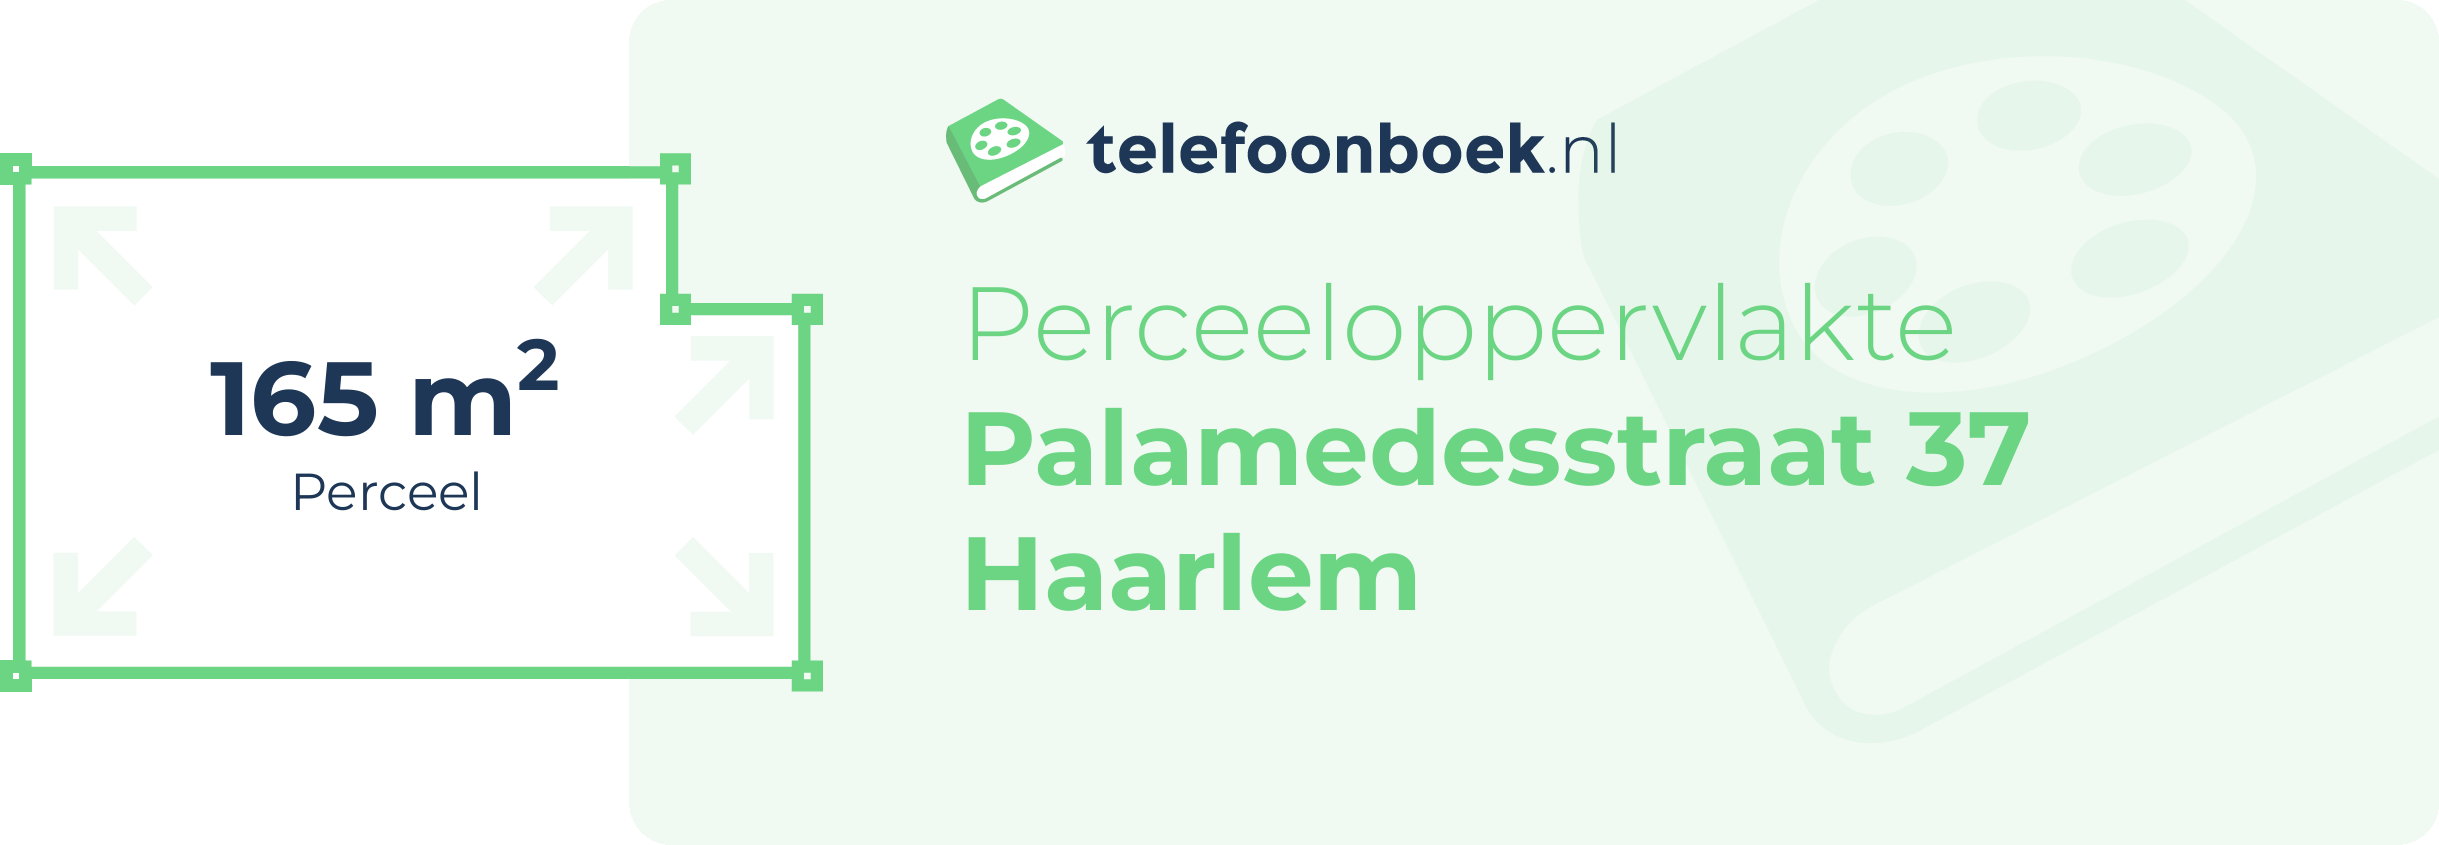 Perceeloppervlakte Palamedesstraat 37 Haarlem